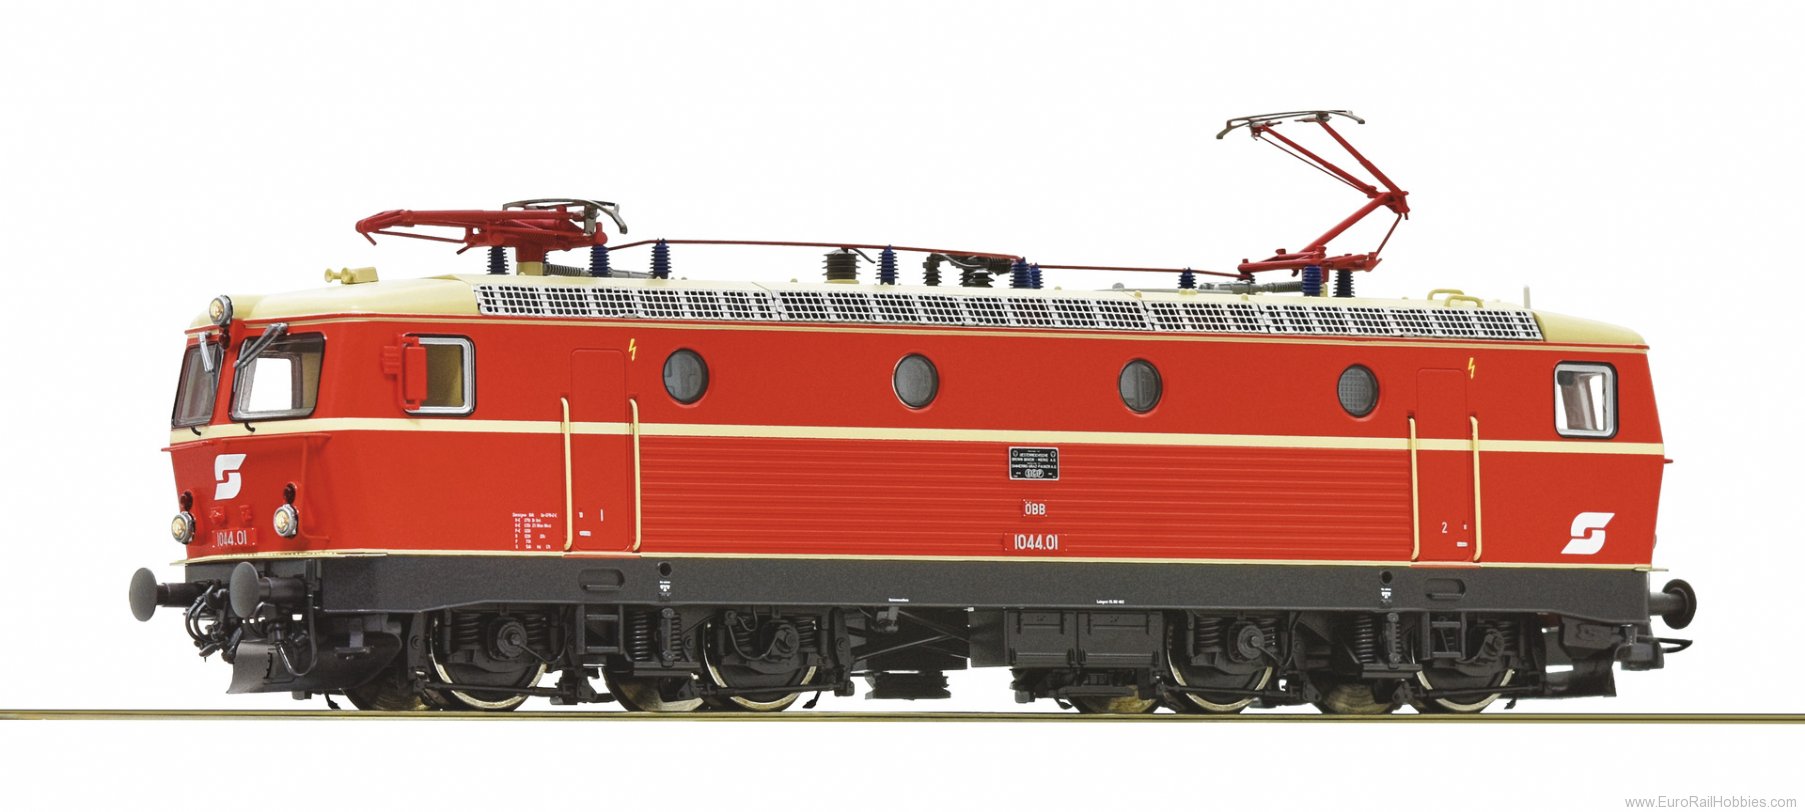 Roco 70434 OBB Electric locomotive 1044.01,  DCC w/Sound